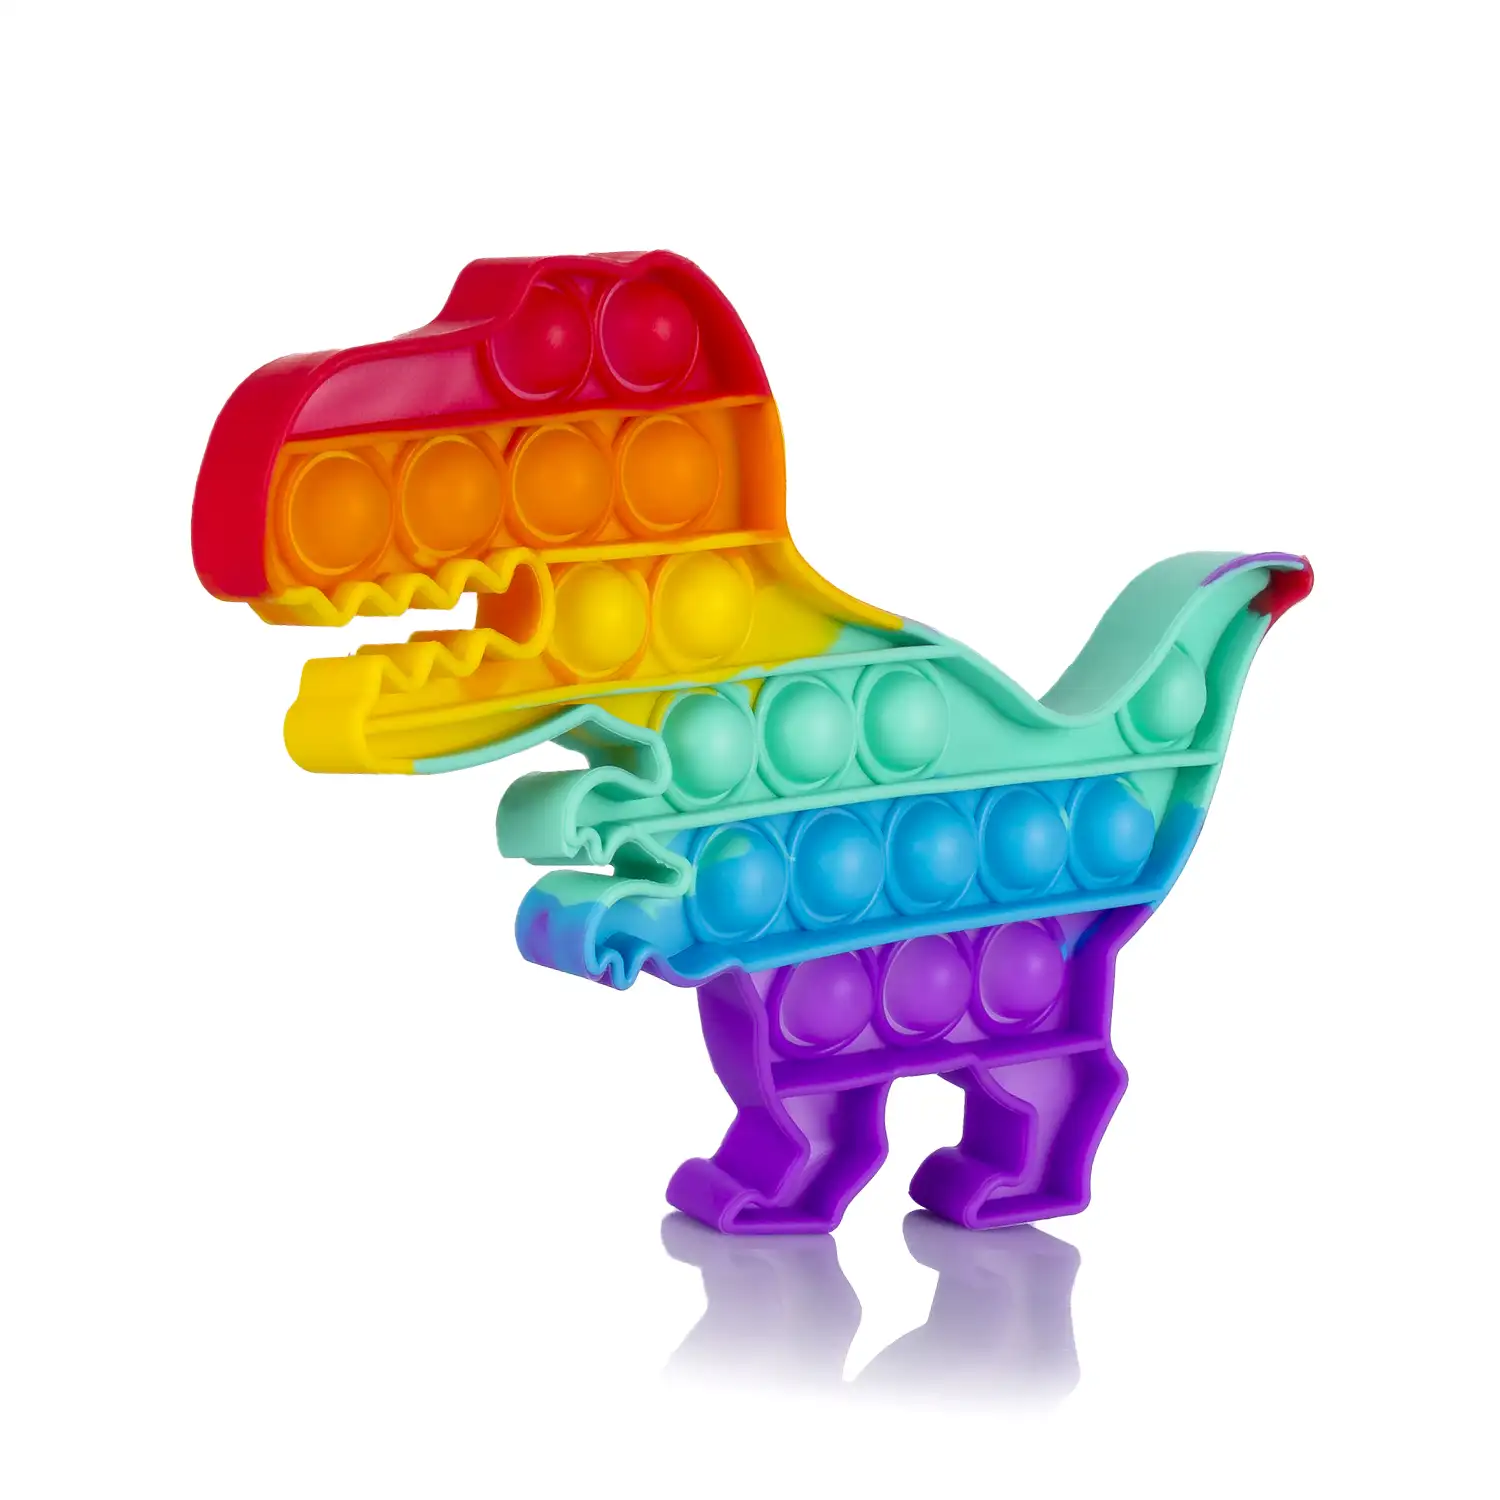 Bubble Pop It juguete sensitivo desestresante, burbujas de silicona para apretar y pulsar. Diseño T-Rex multicolor.